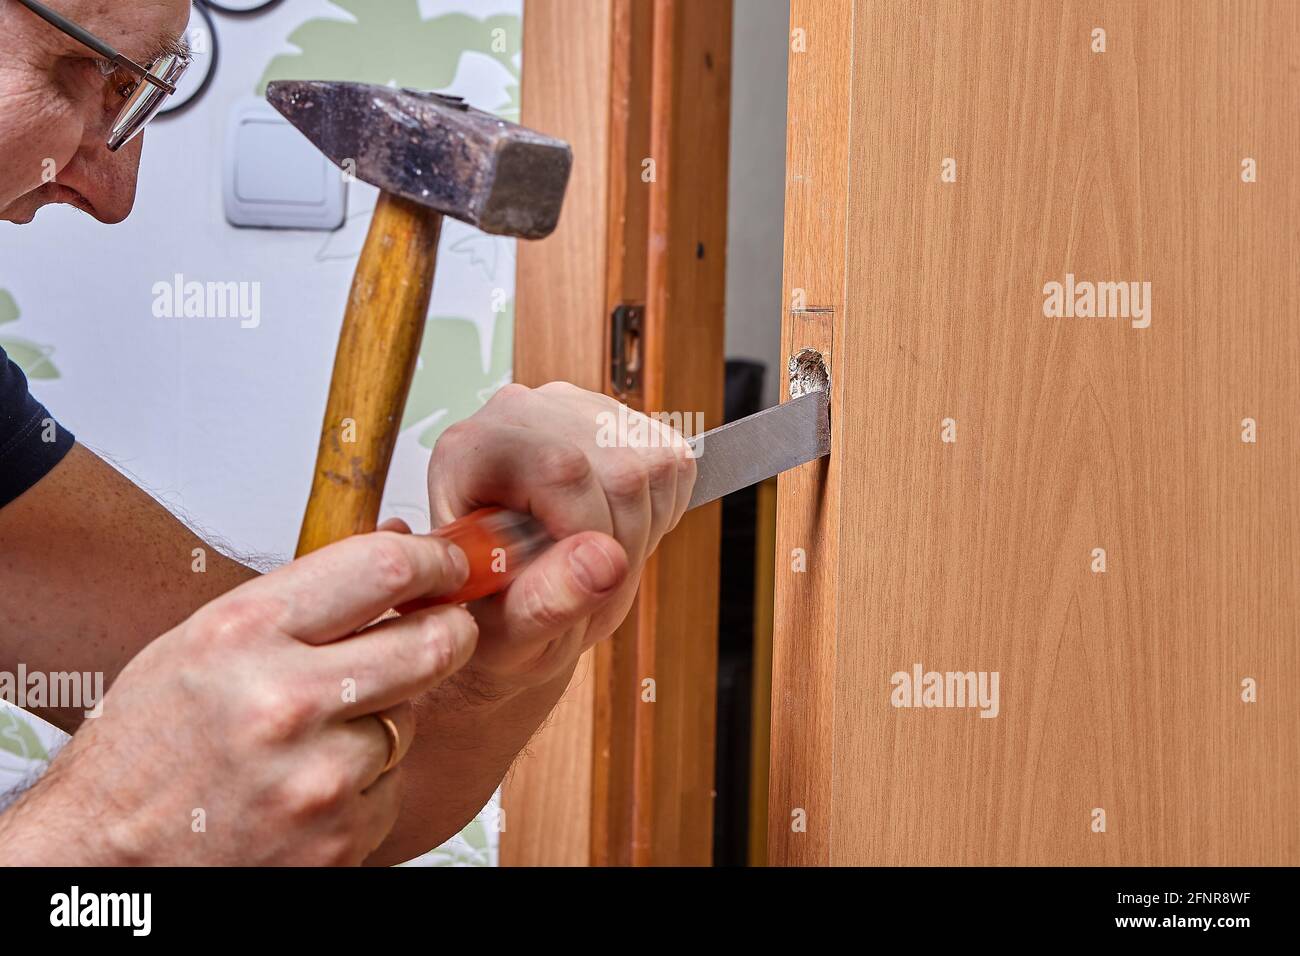 Installation à l'aide de bricoleurs de serrure dans la porte, la rainure est découpée avec un burin pour la plaque de verrouillage. Banque D'Images